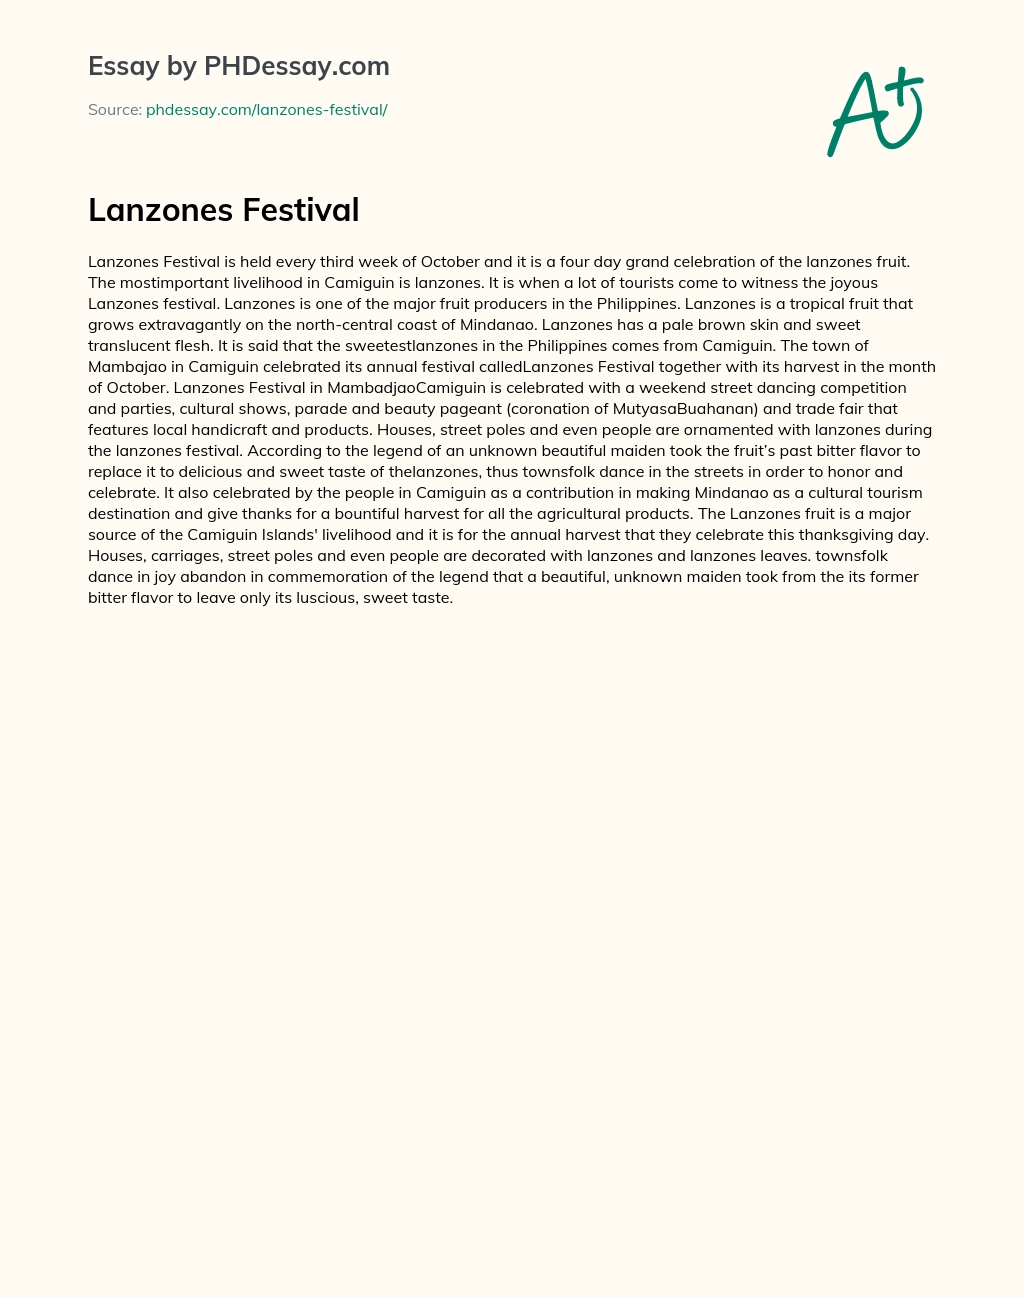 Lanzones Festival essay